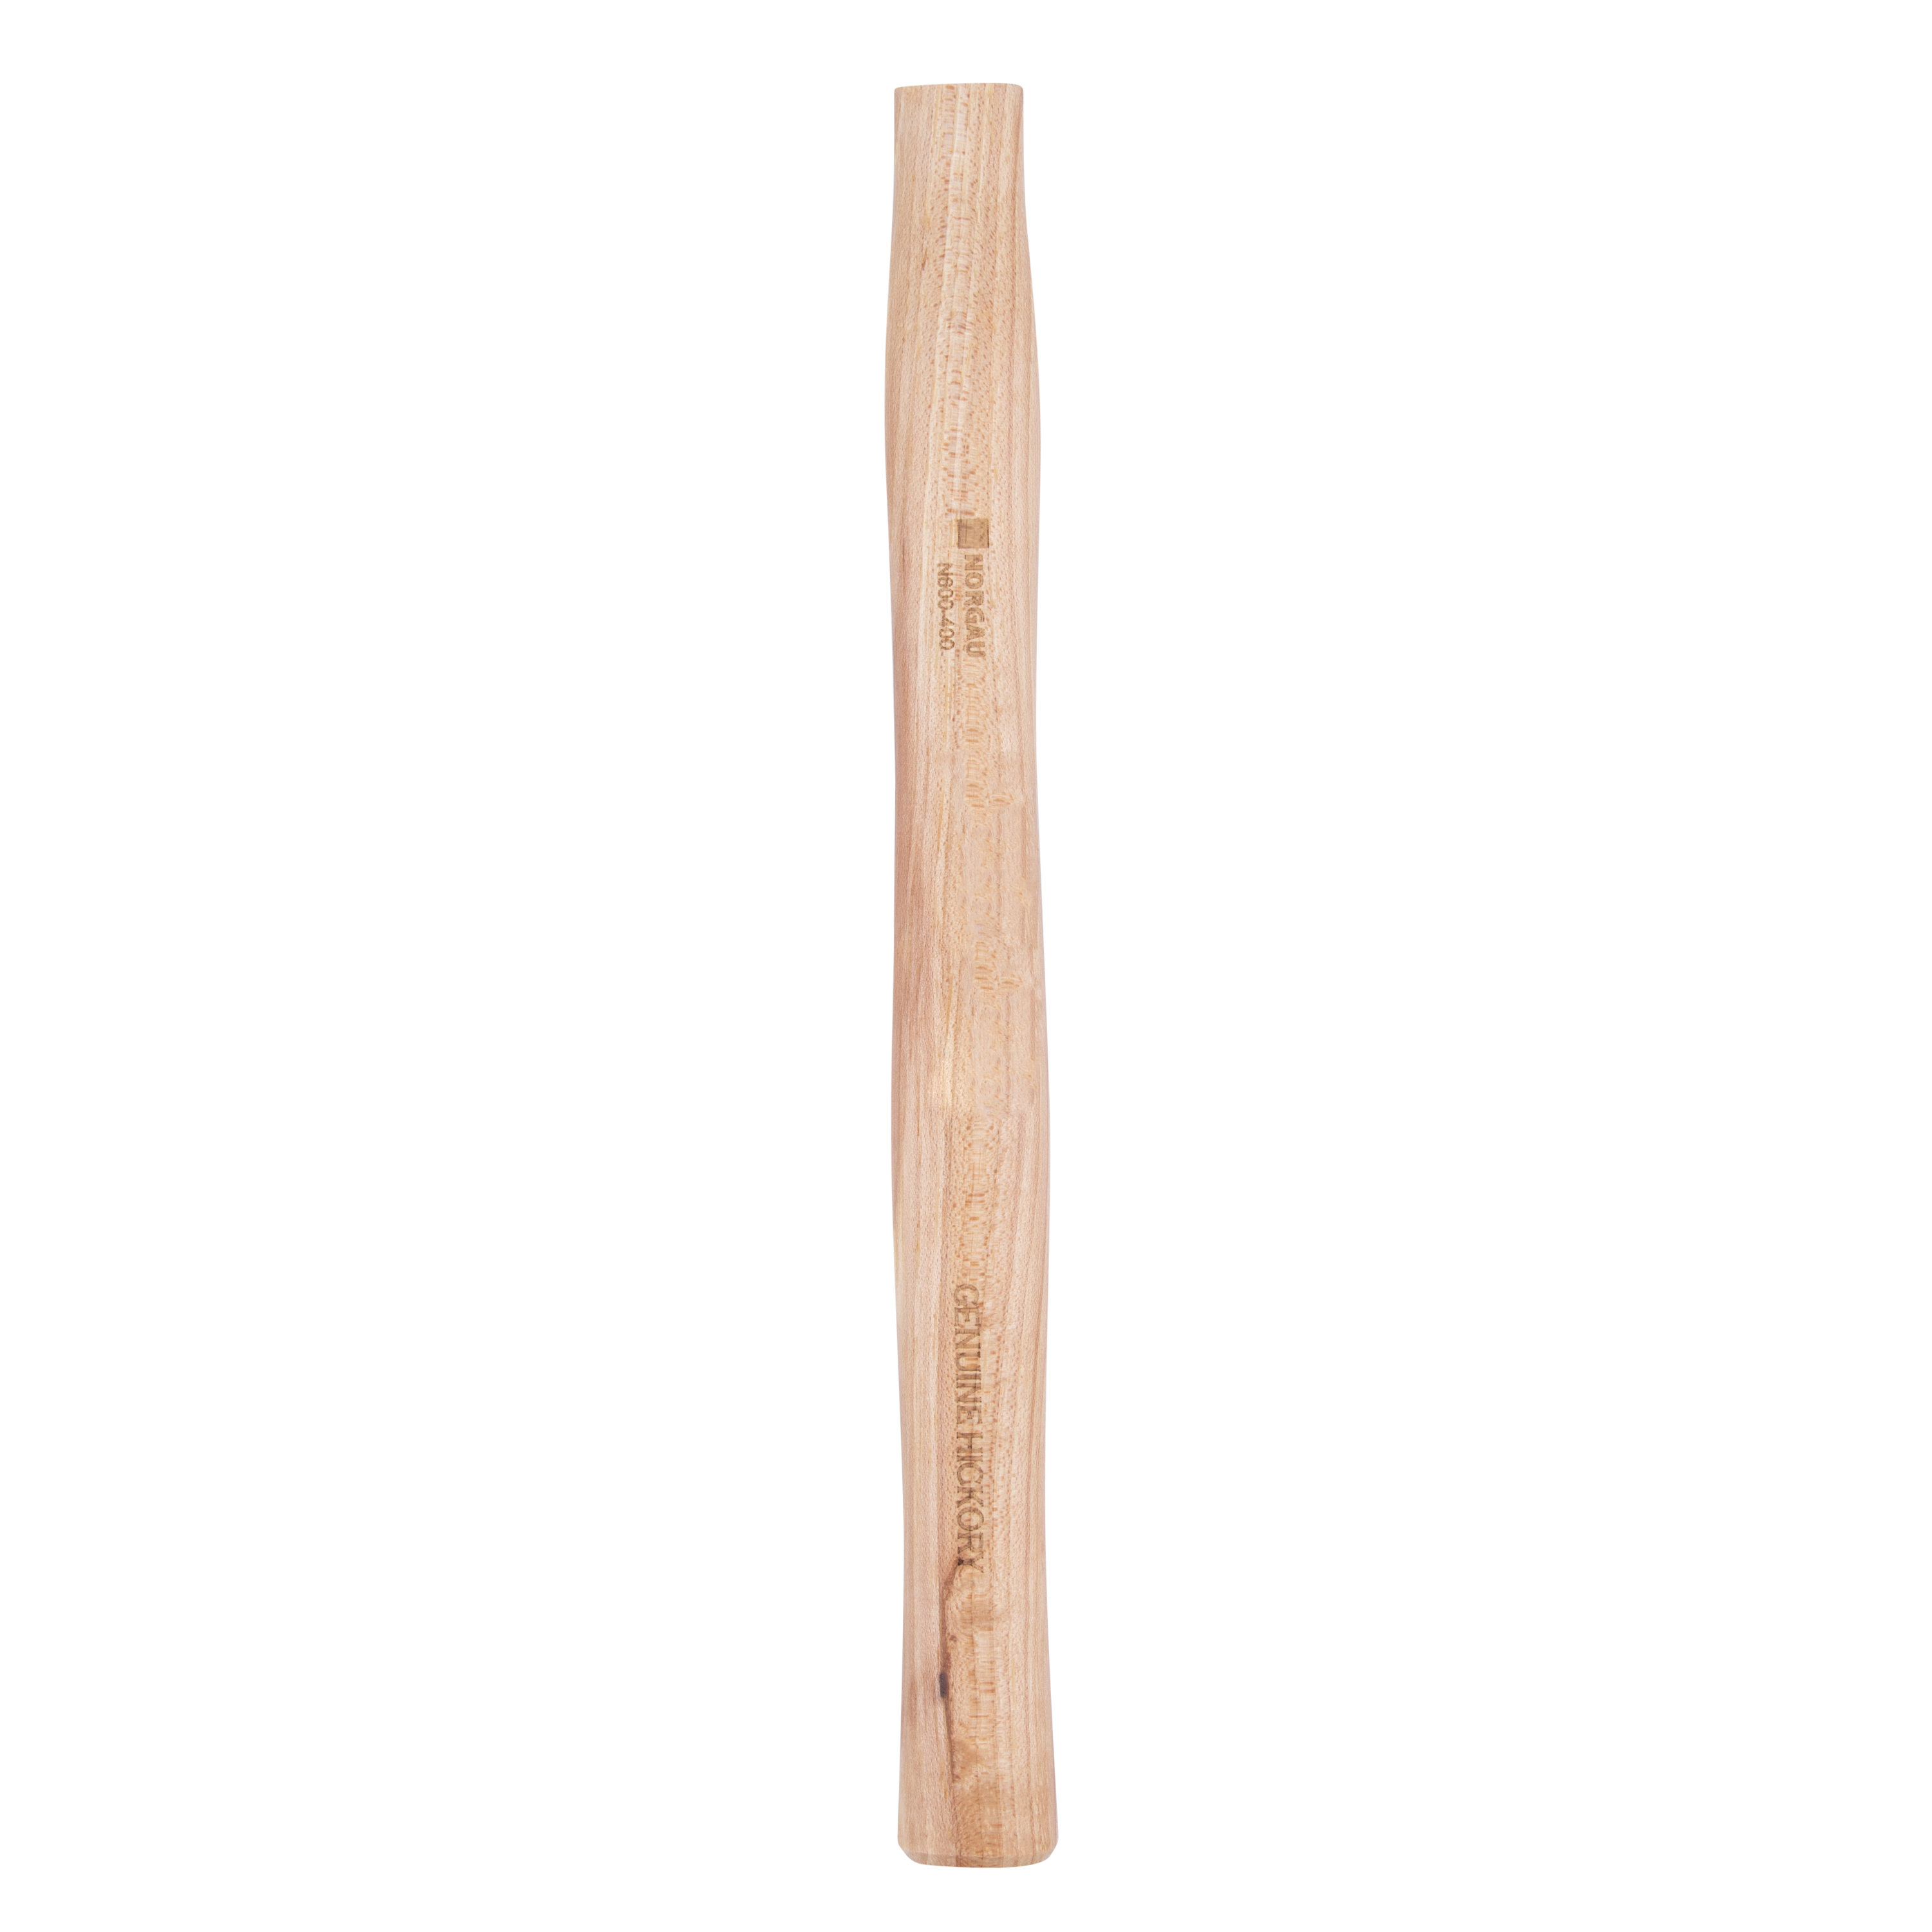 Рукоятка NORGAU Industrial запаснаядля молотка 400 г, из древесины гикори, 300 мм деревянная рукоятка для молотка ремоколор